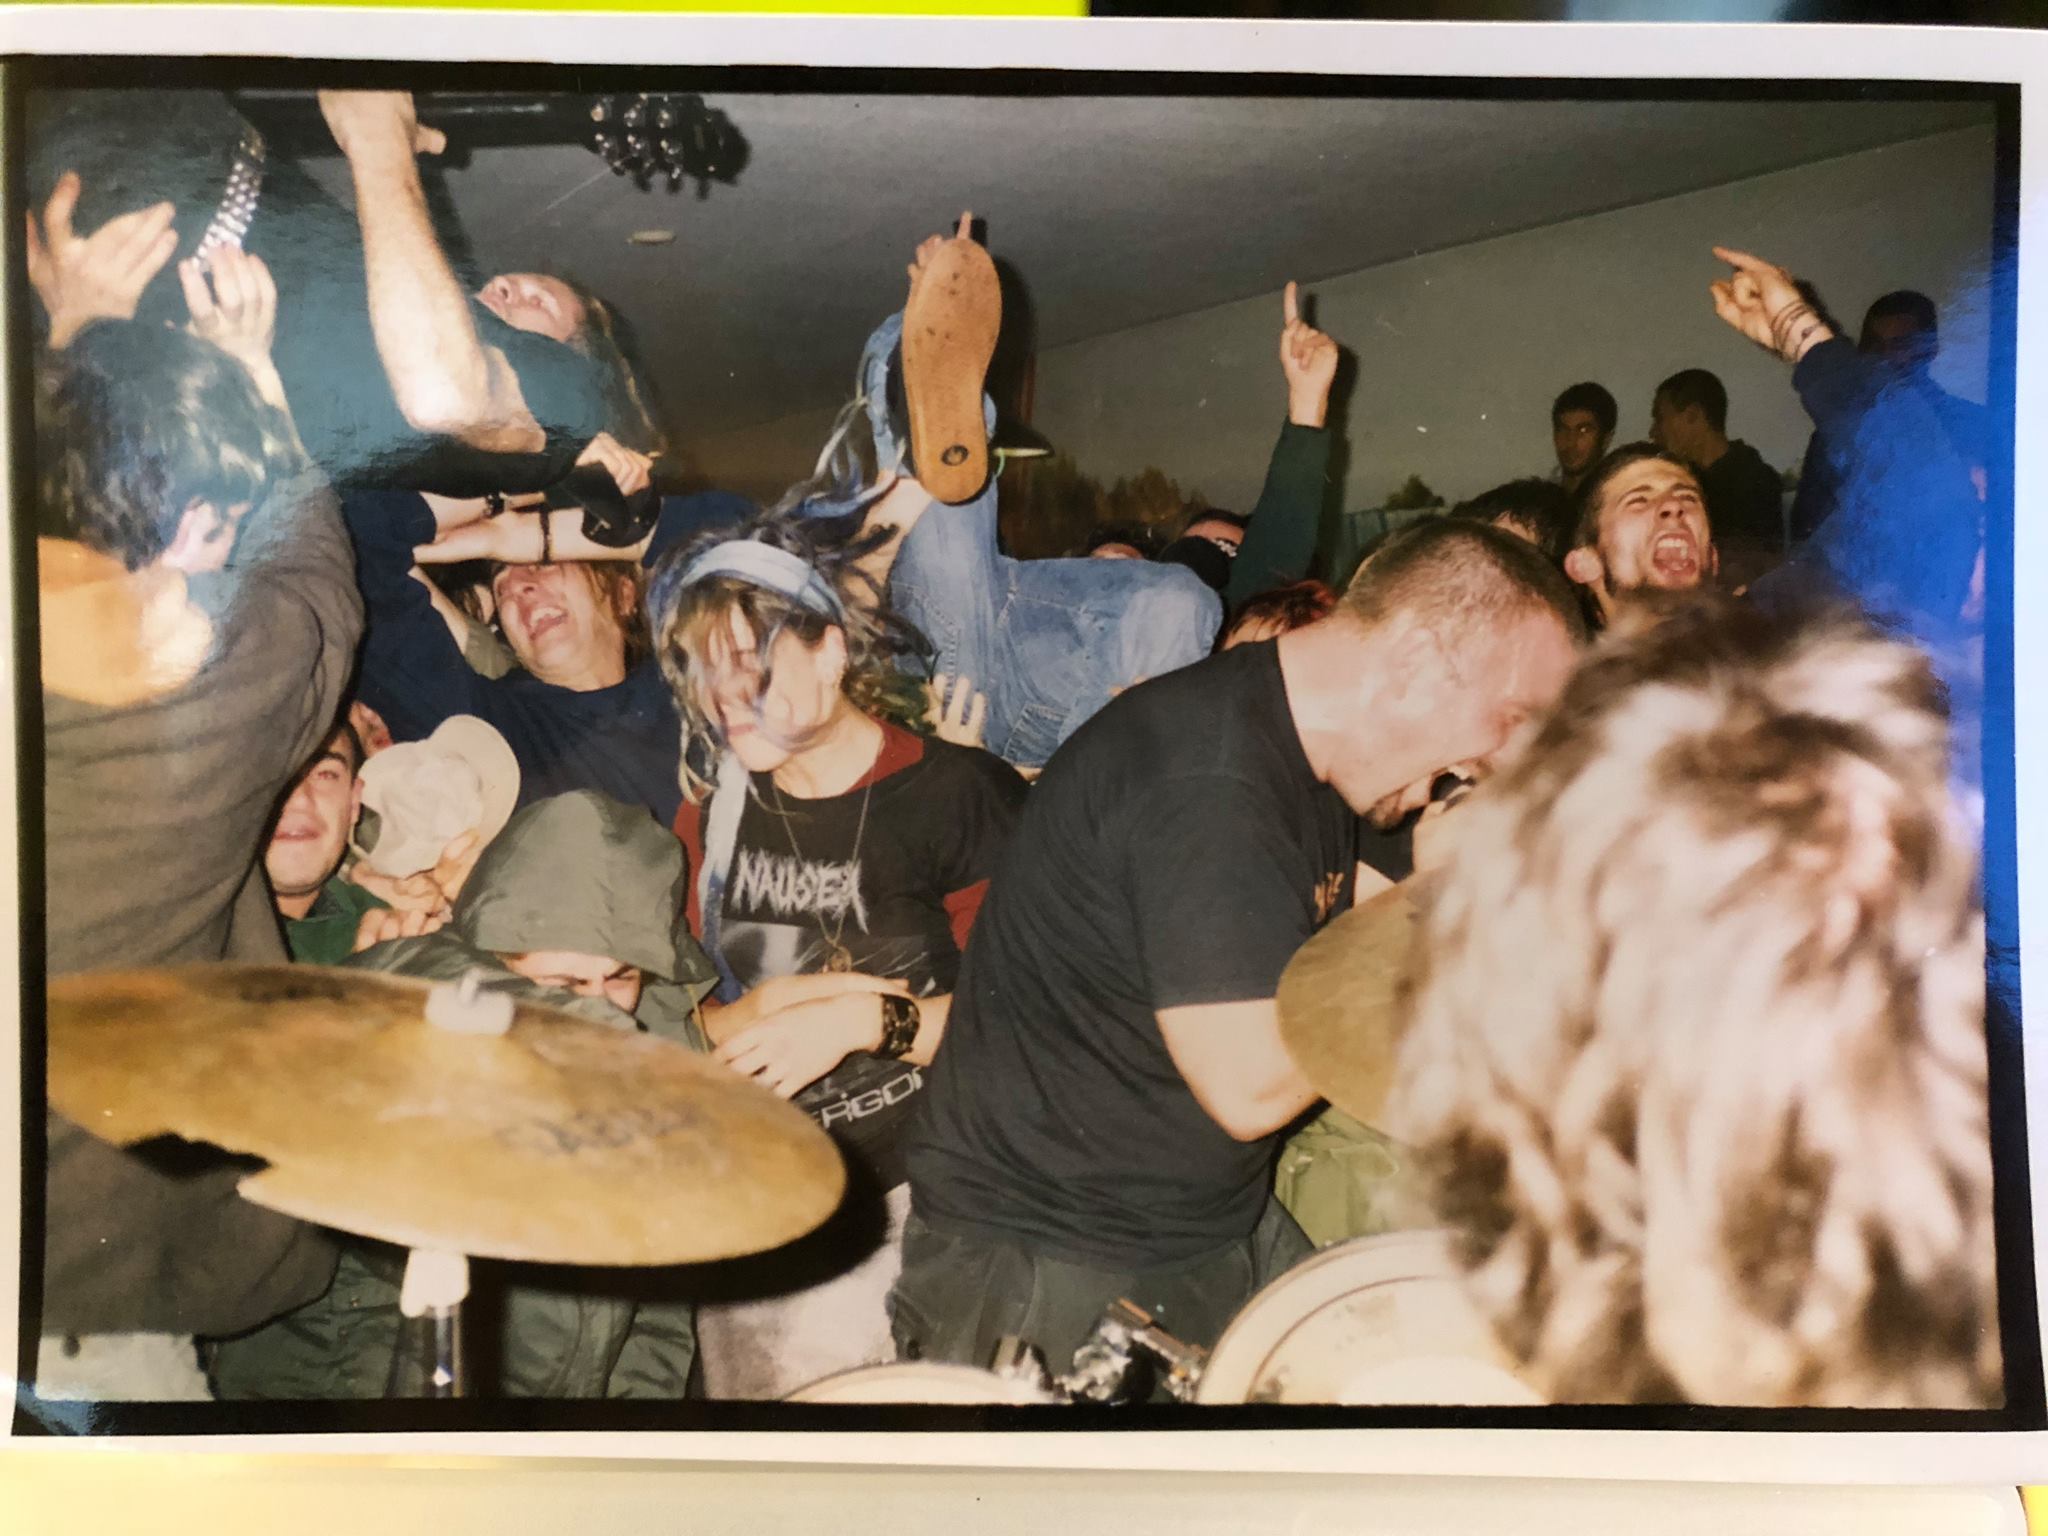 DROPDEAD live - Libourne France tour 1998